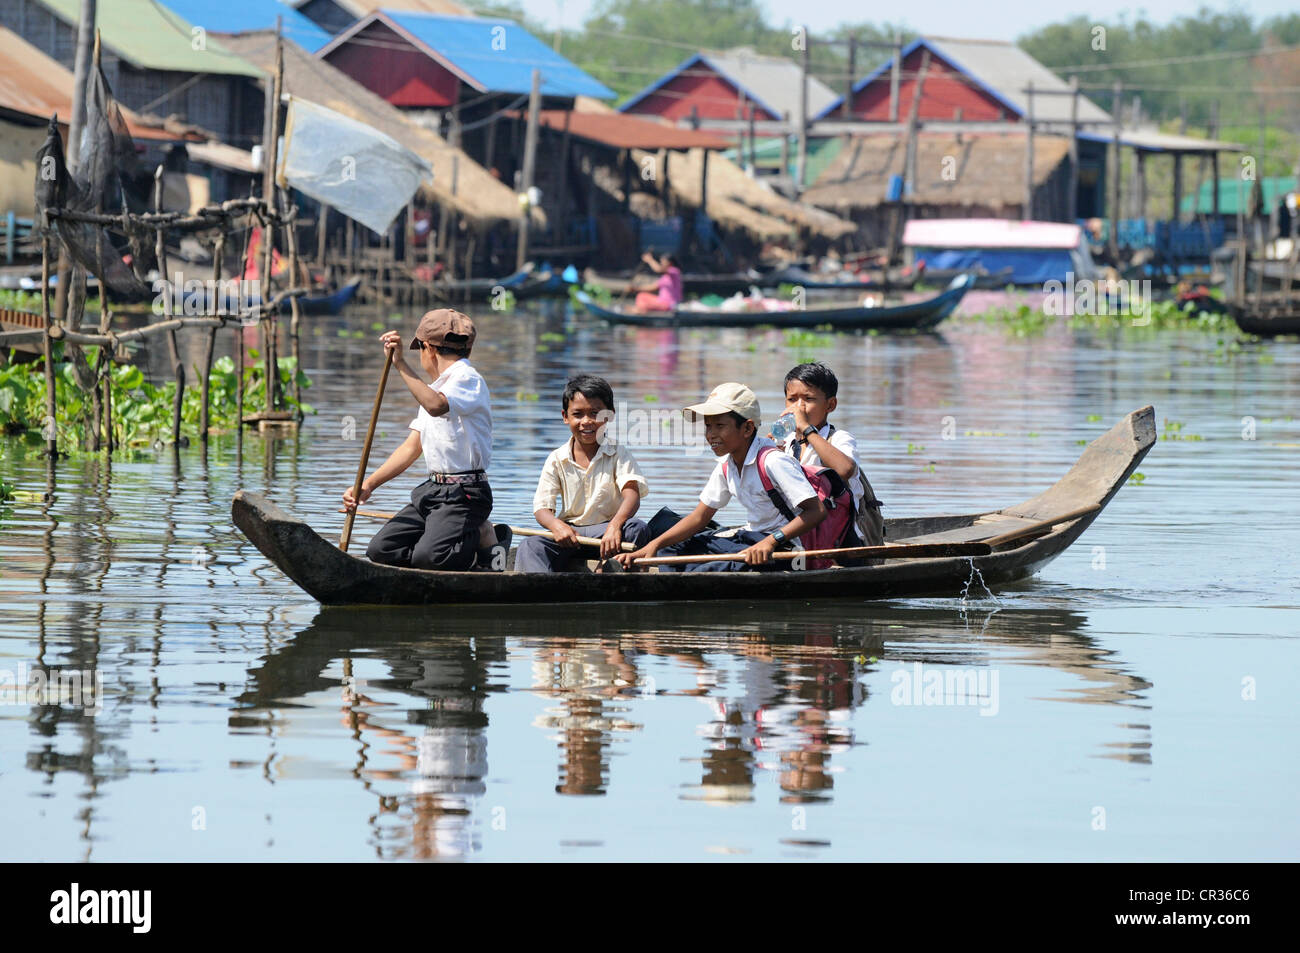 Bambini, canotto, villaggio galleggiante, nautica, lago Tonle Sap, Cambogia, sud-est asiatico Foto Stock